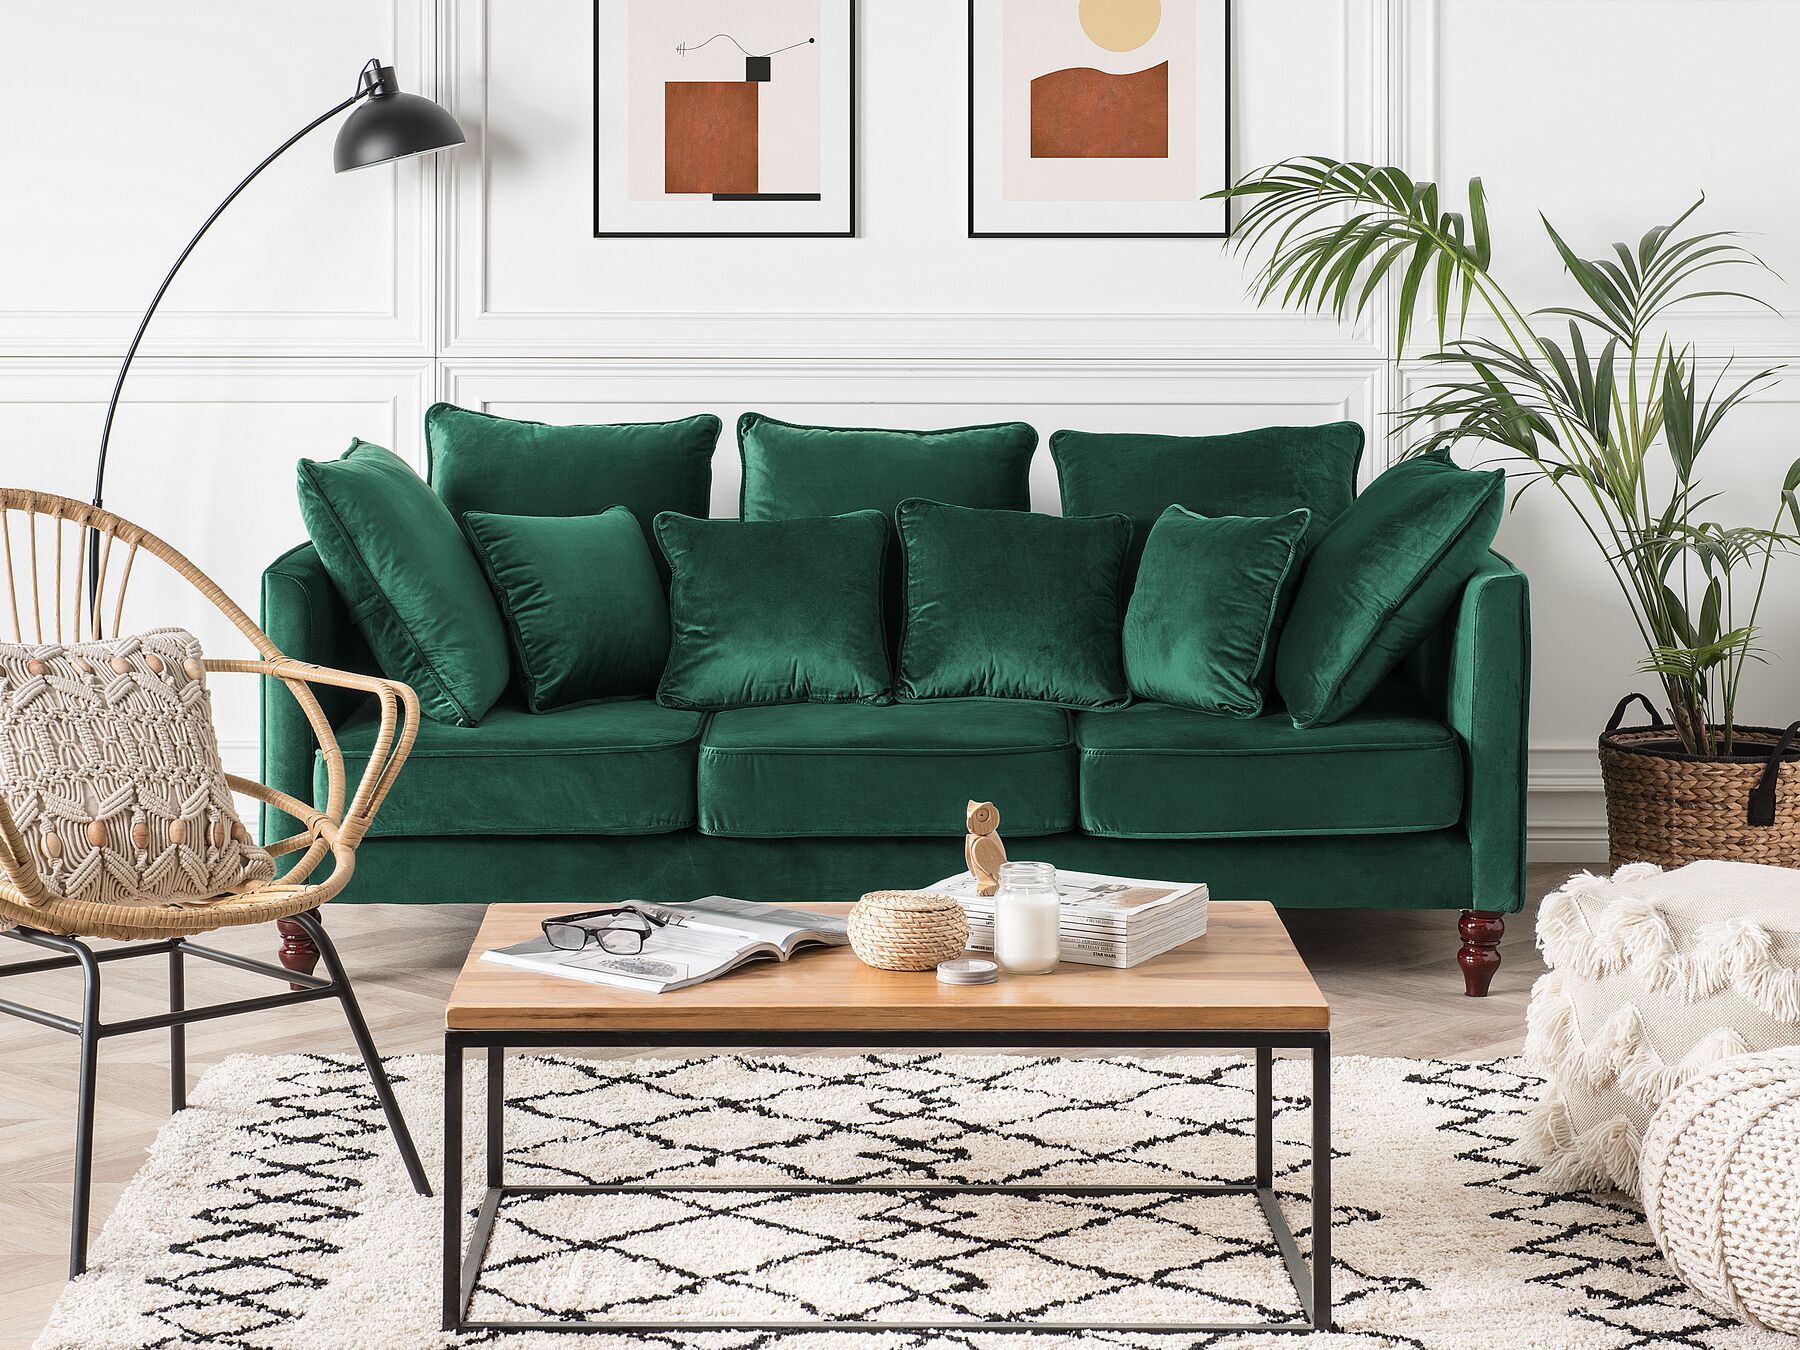 emerald green sofa living room ideas